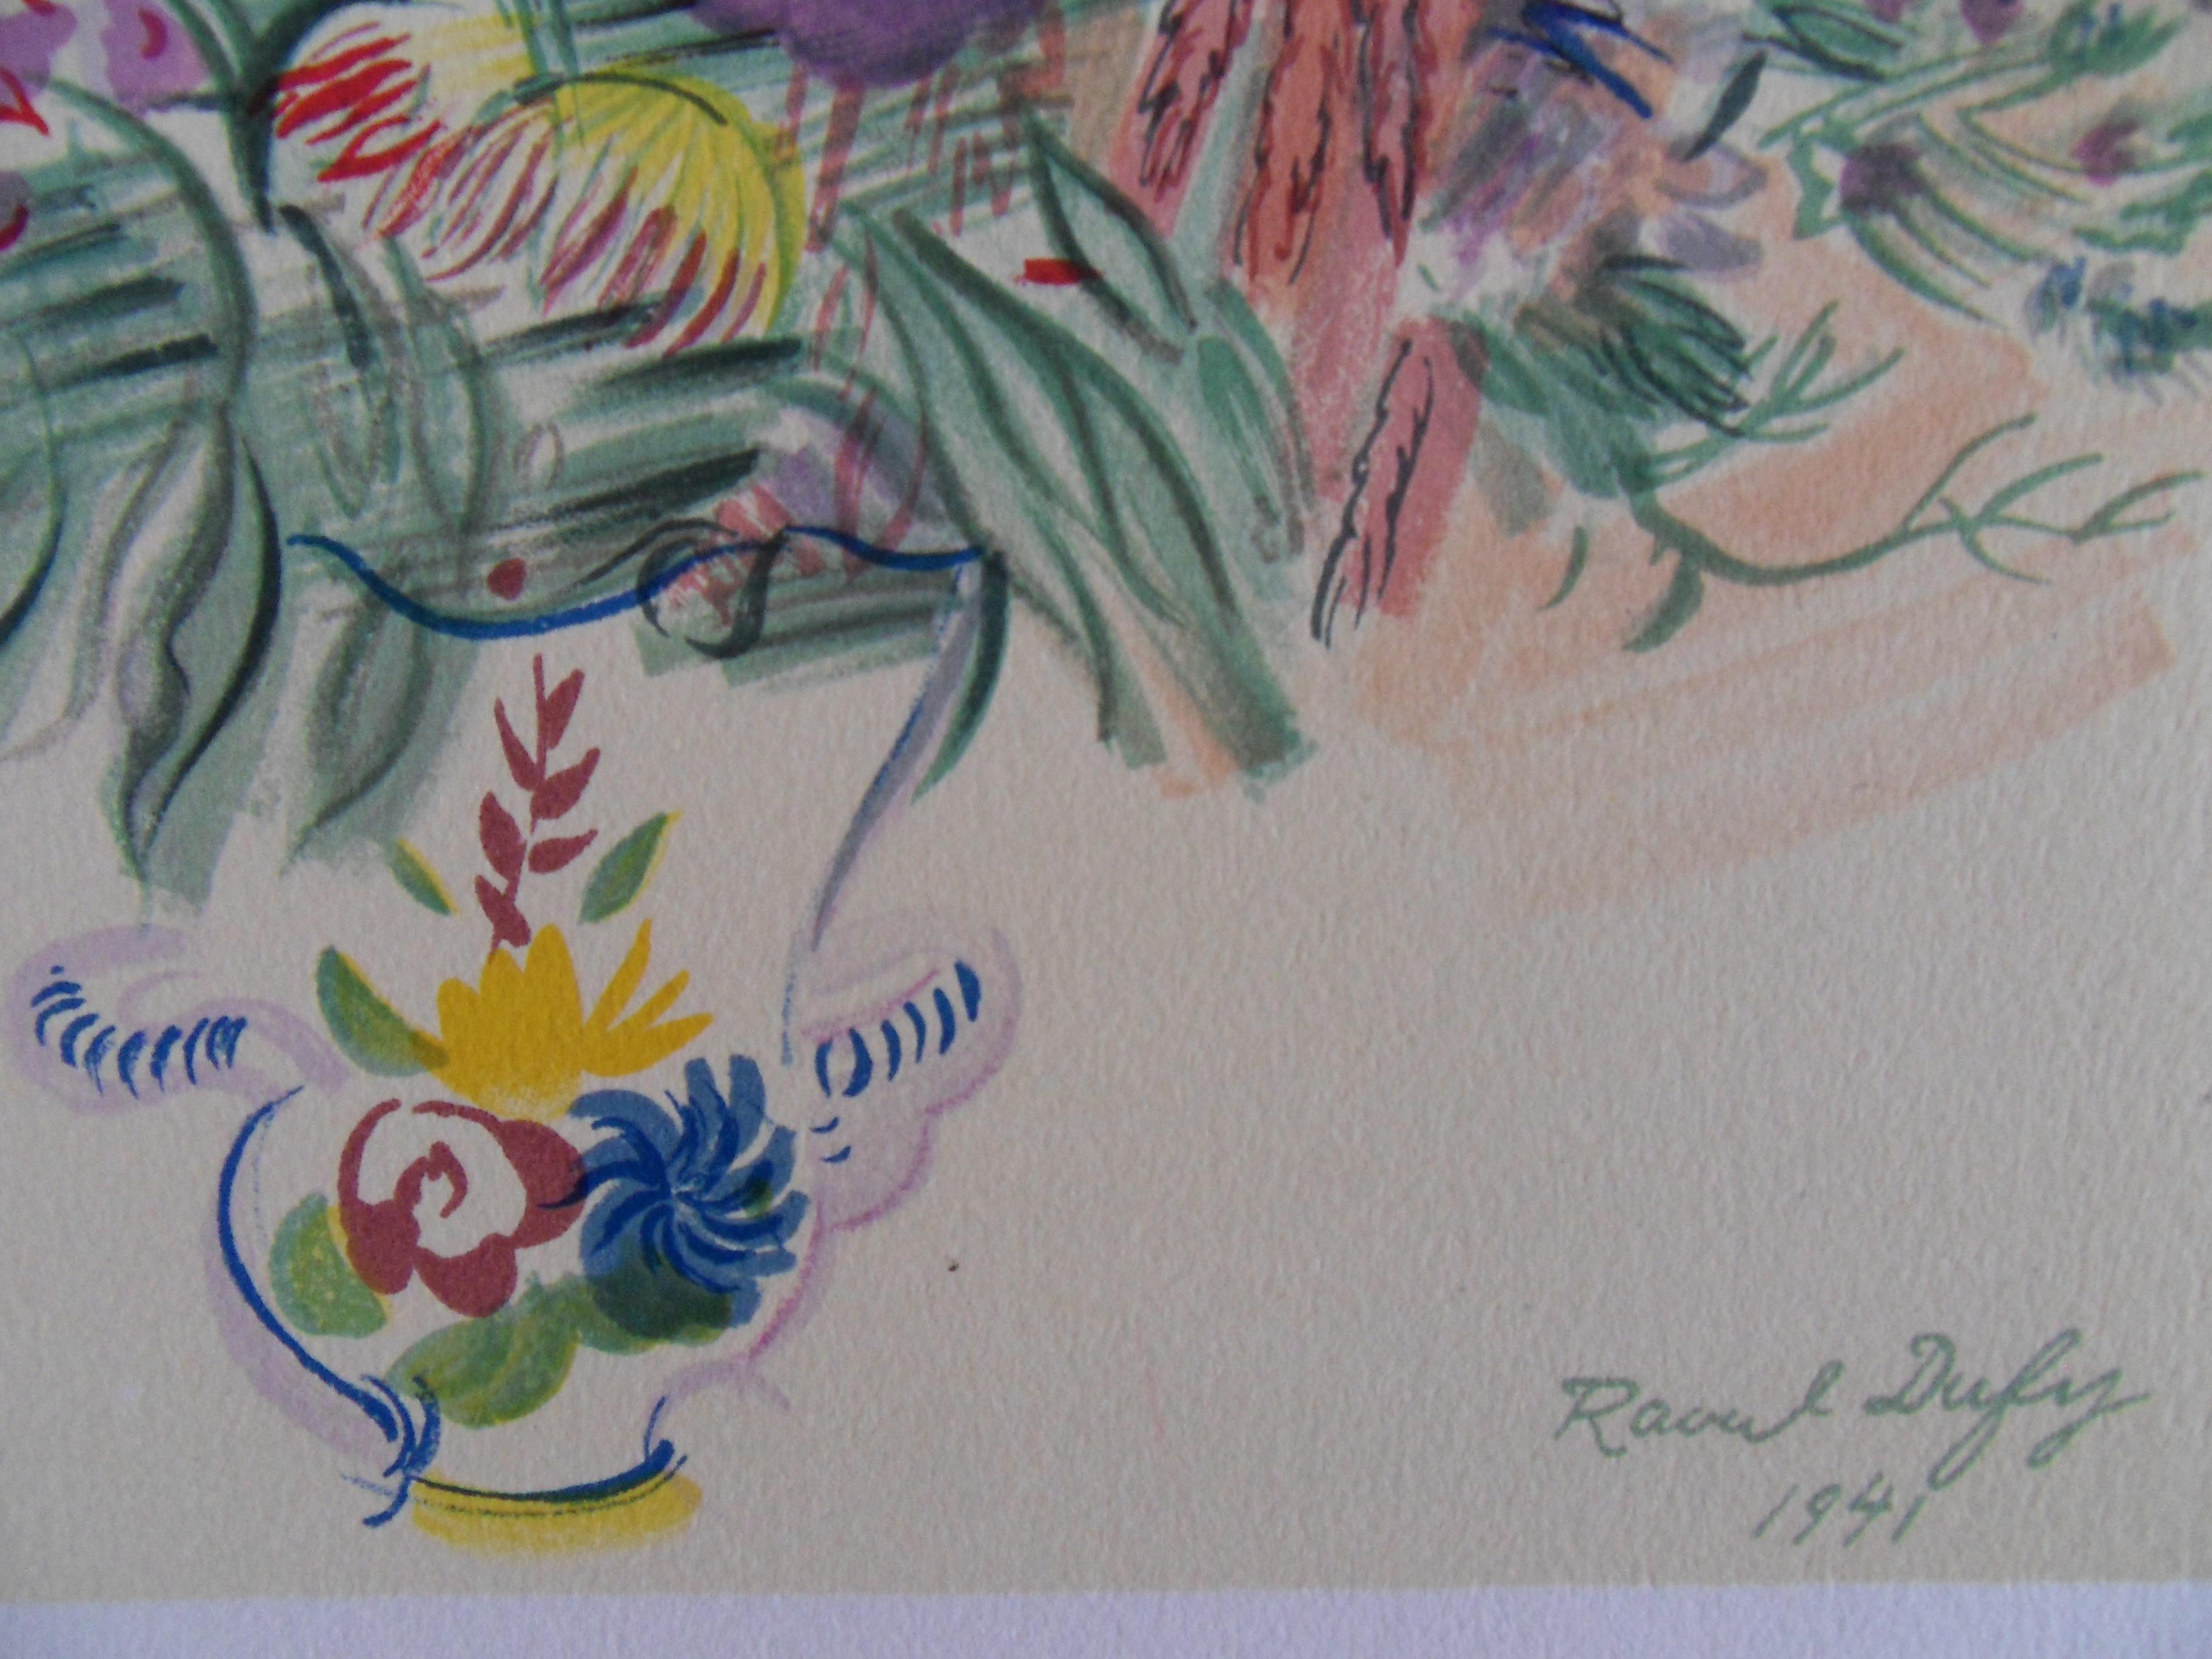 Buntes Blumenstrauß – Original-Lithographie – 1965 (Moderne), Print, von Raoul Dufy